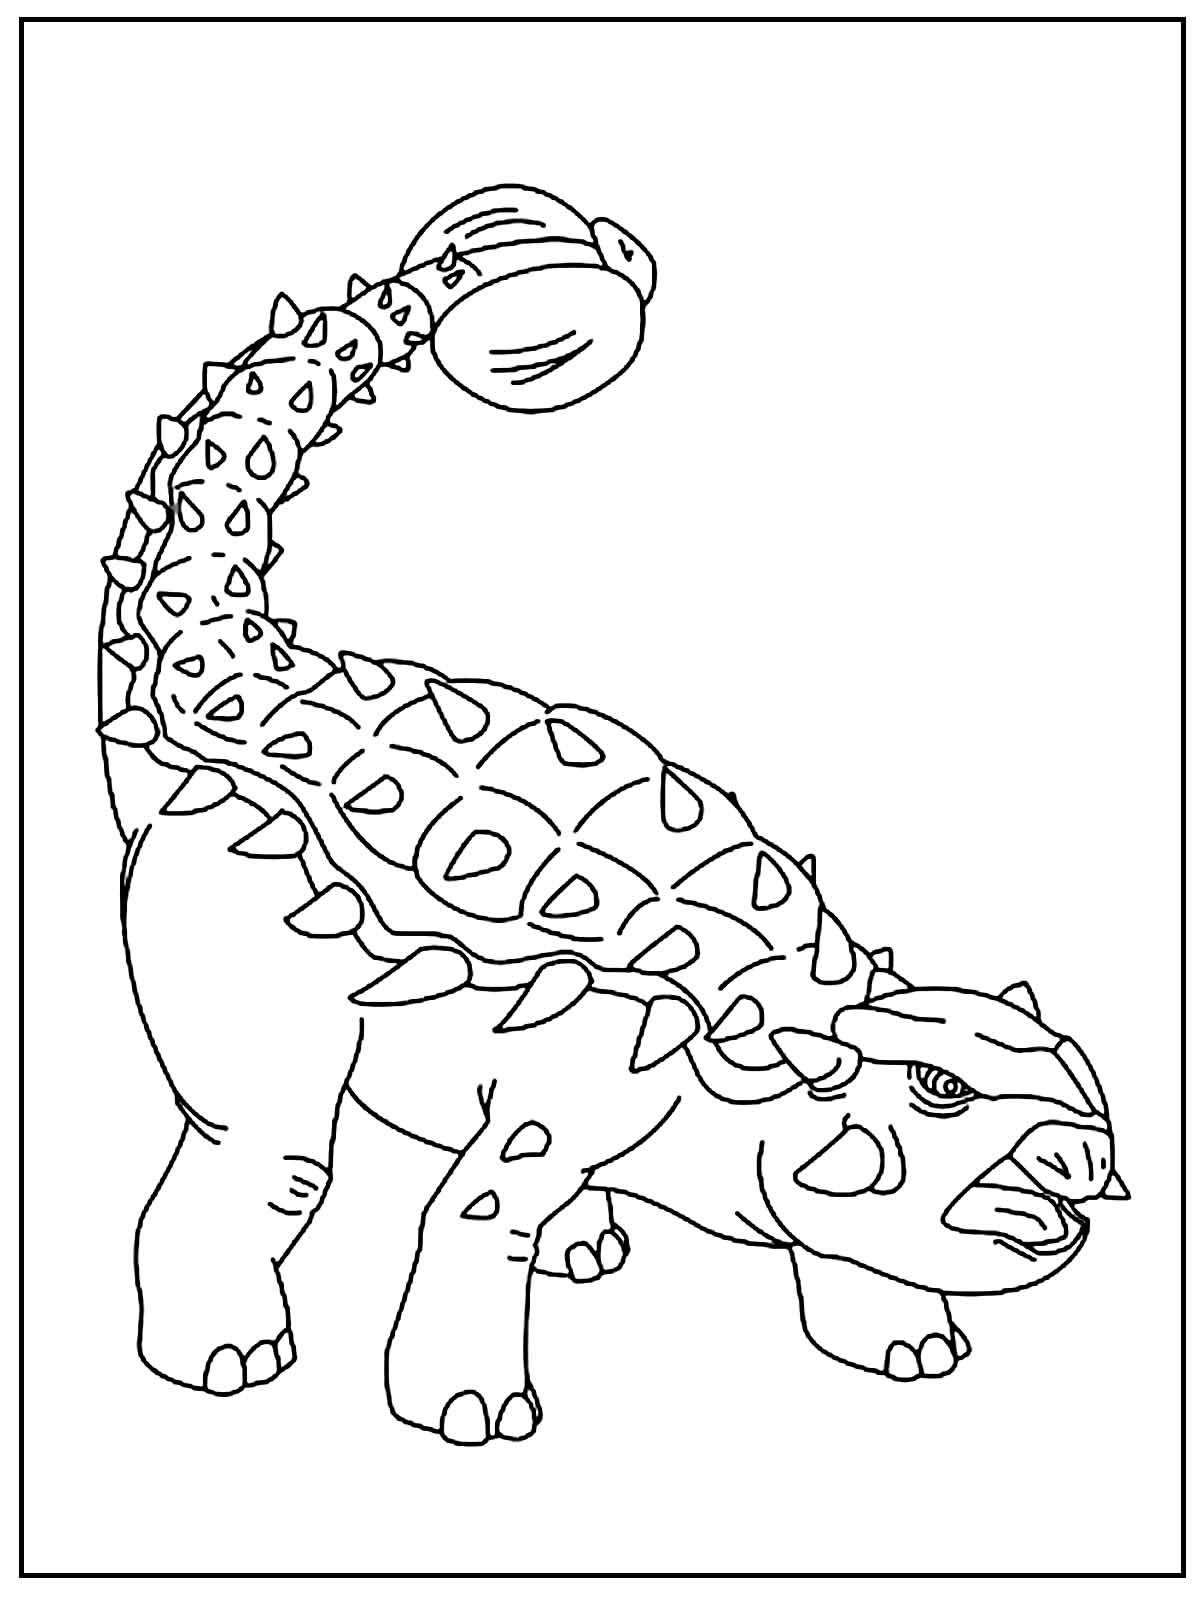 Imagem para colorir de Dinossauro